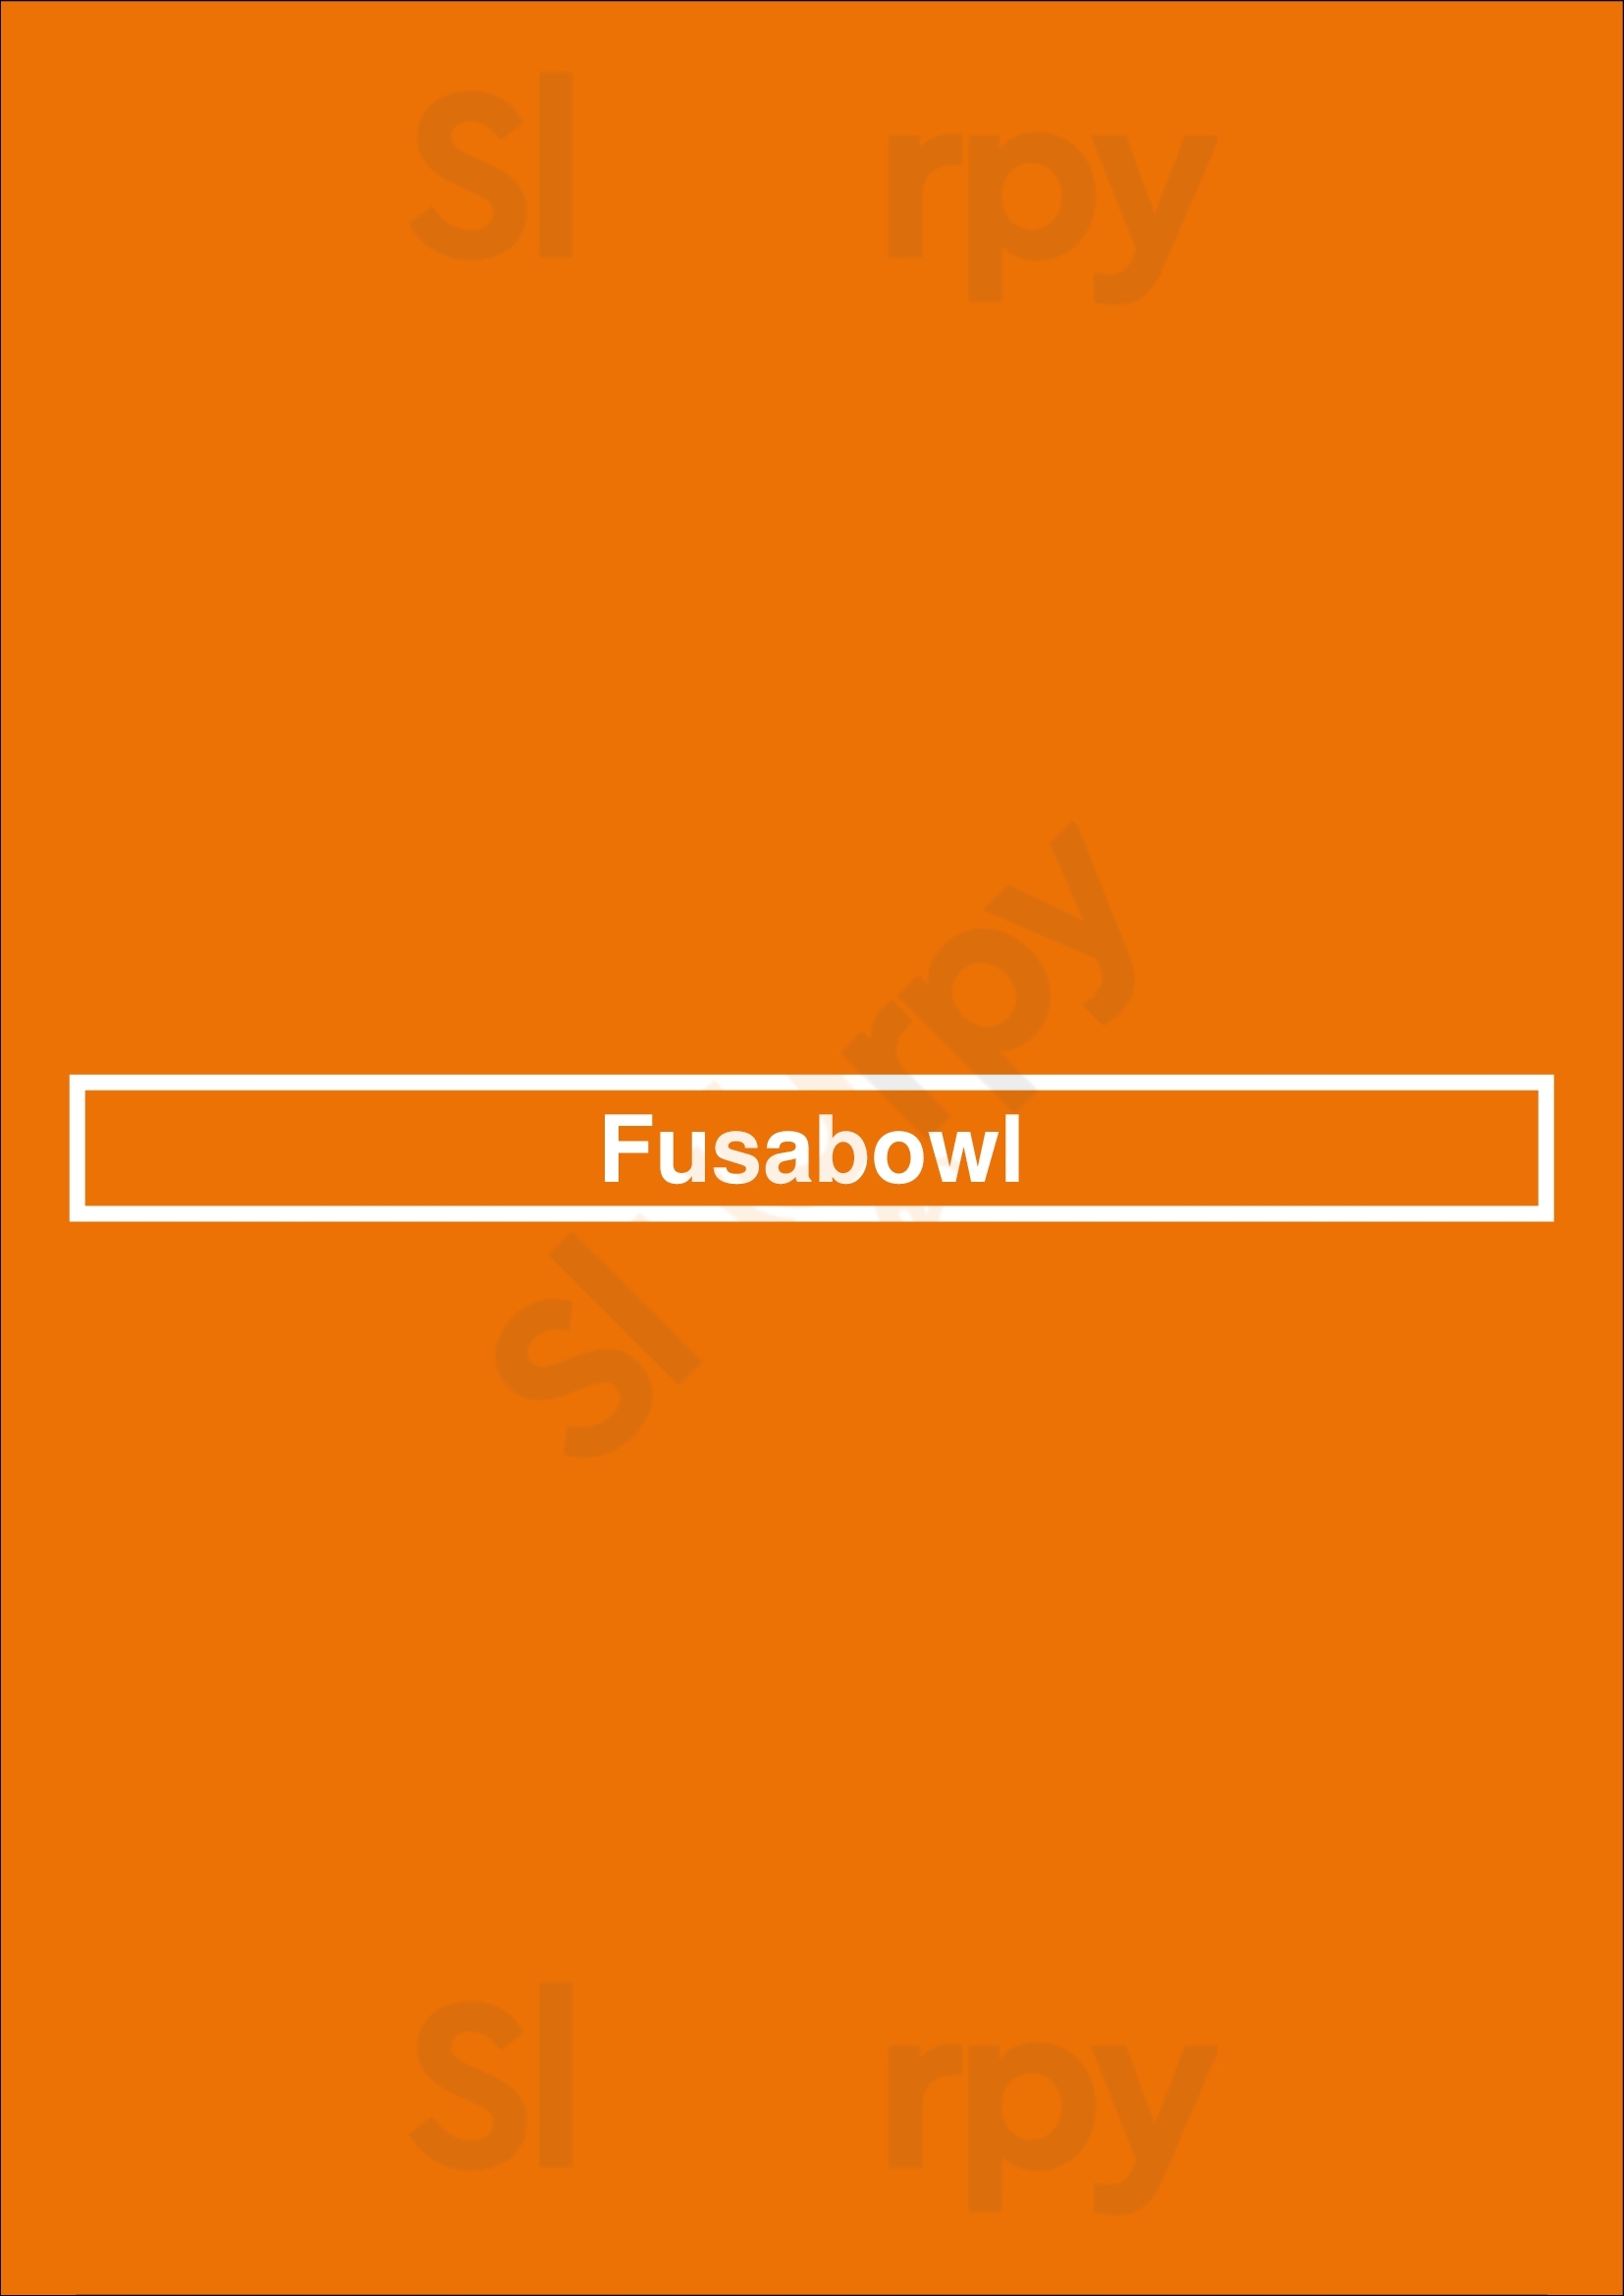 Fusabowl Cincinnati Menu - 1